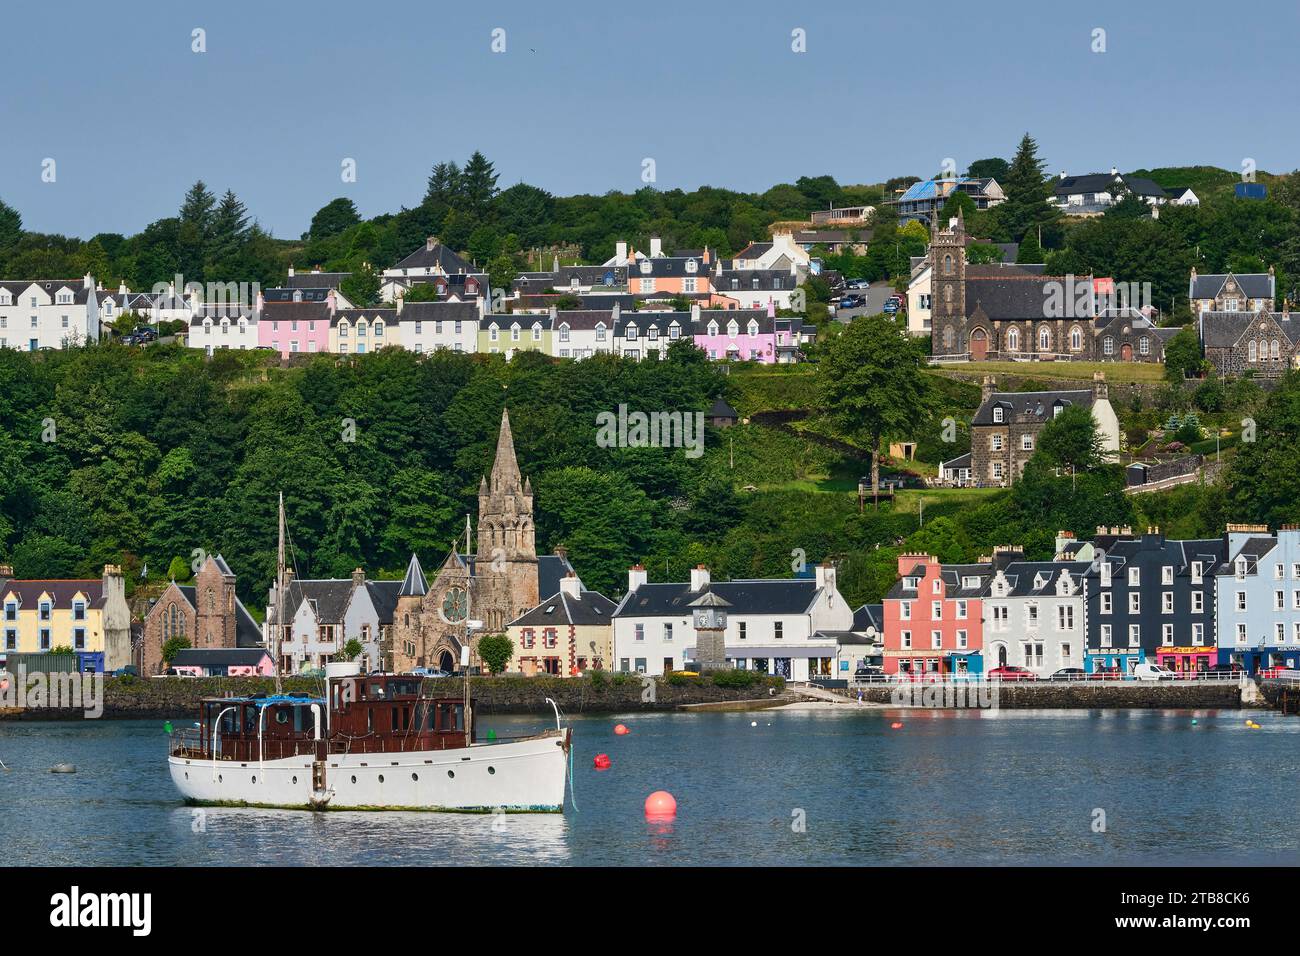 Écosse, Hébrides intérieures, île de Mull : village de Tobermory. Façades de bâtiments colorés le long du front de mer Banque D'Images